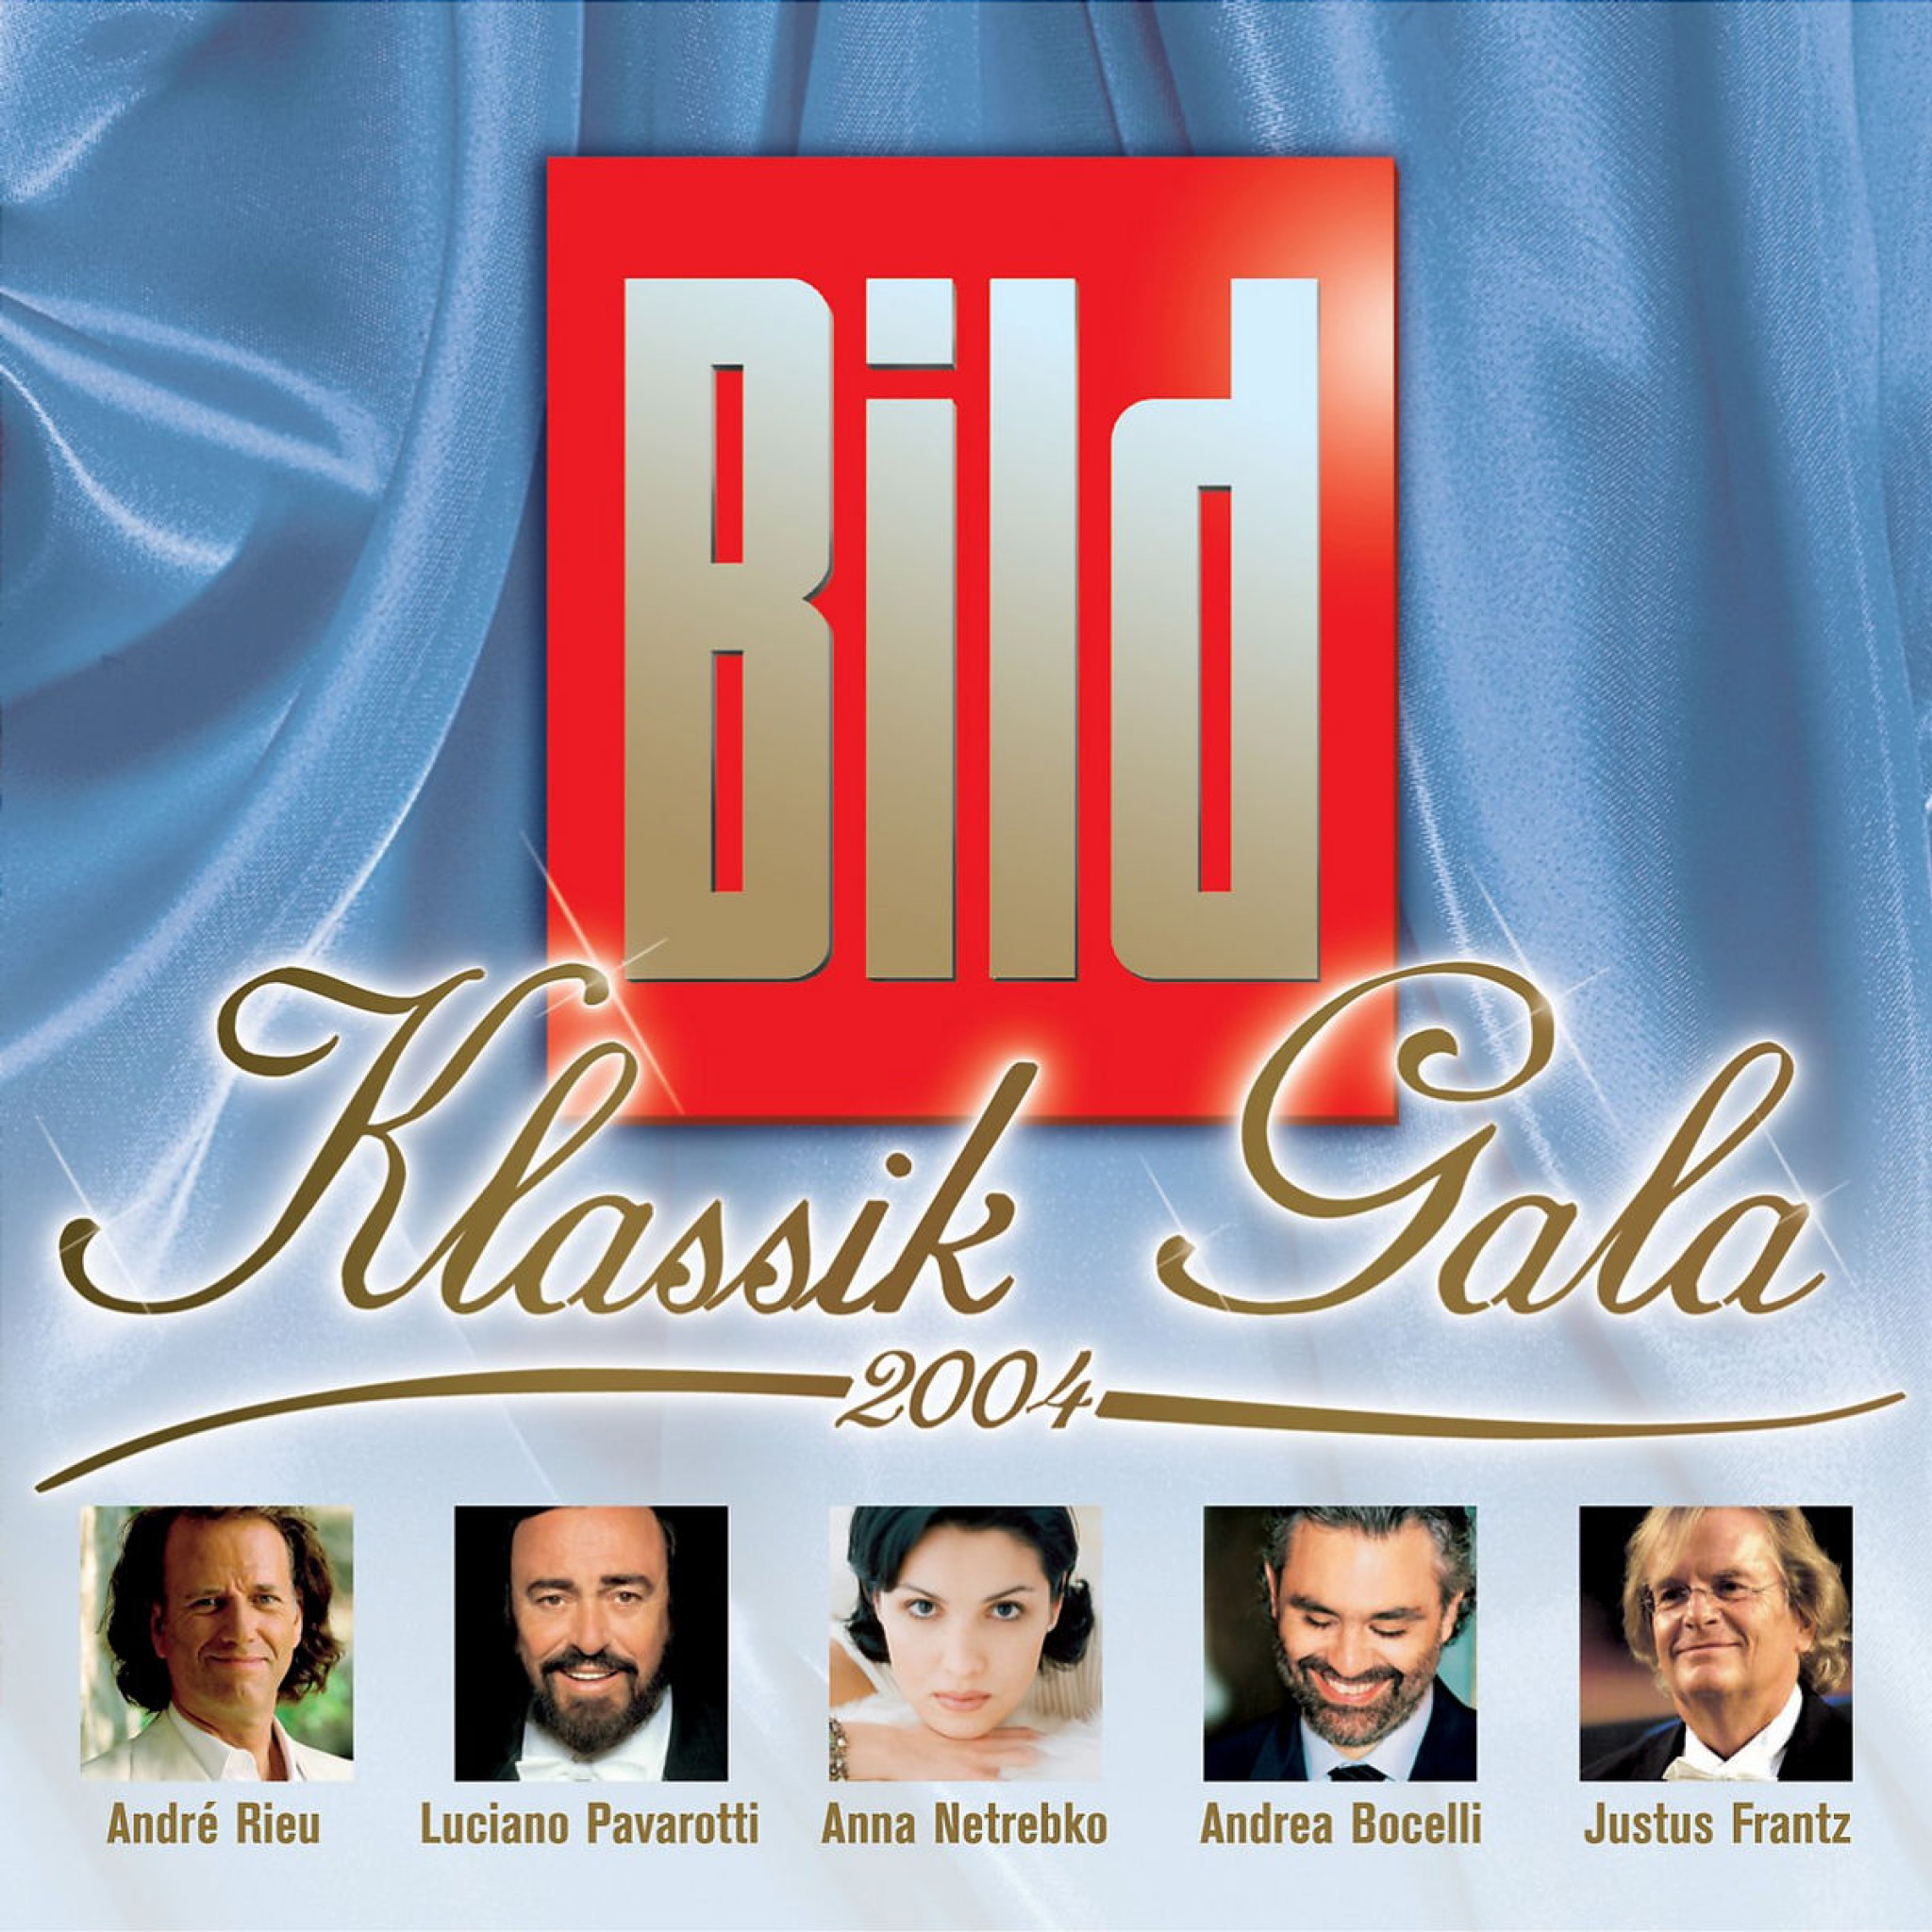 BILD-KLASSIK-GALA 2004